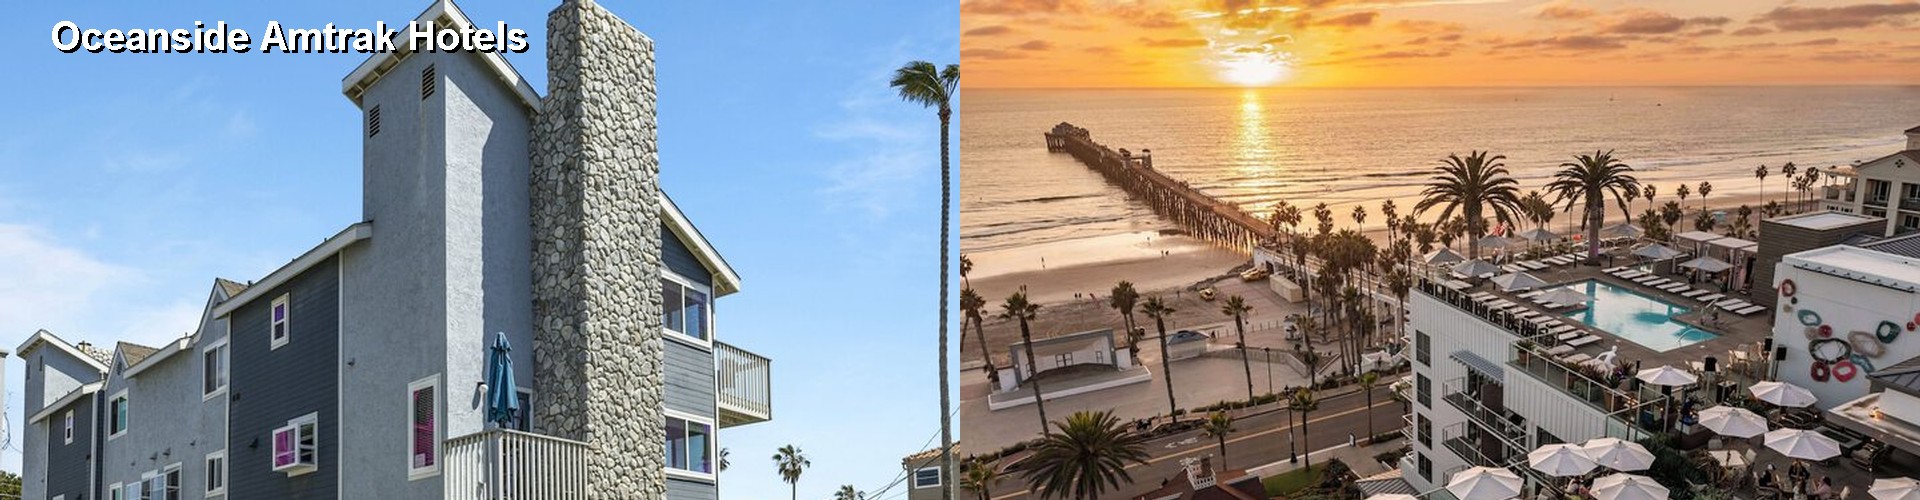 5 Best Hotels near Oceanside Amtrak